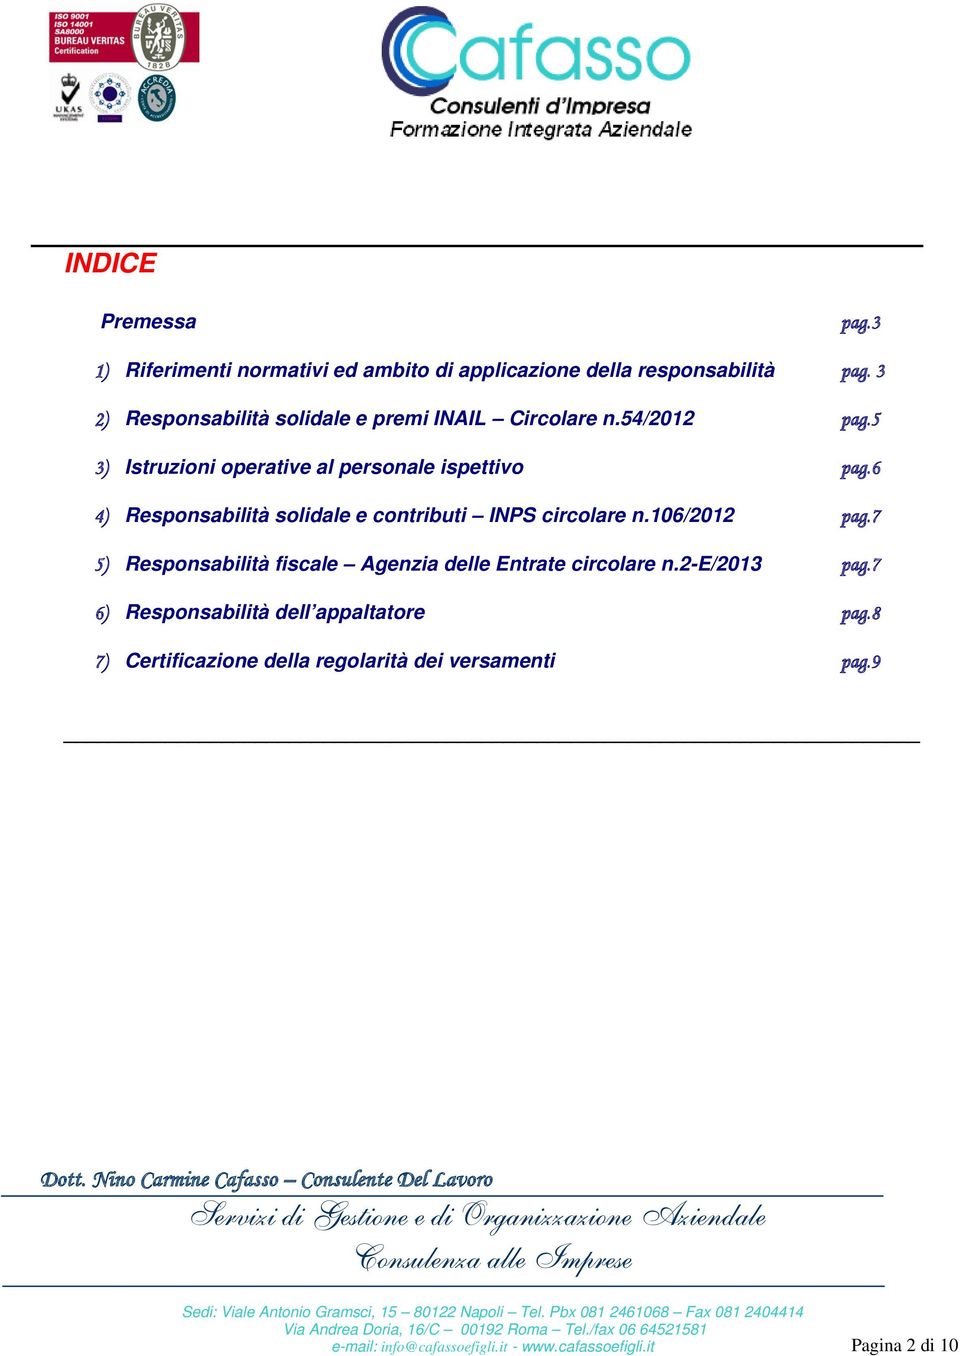 6 4) Responsabilità solidale e contributi INPS circolare n.106/2012 pag.